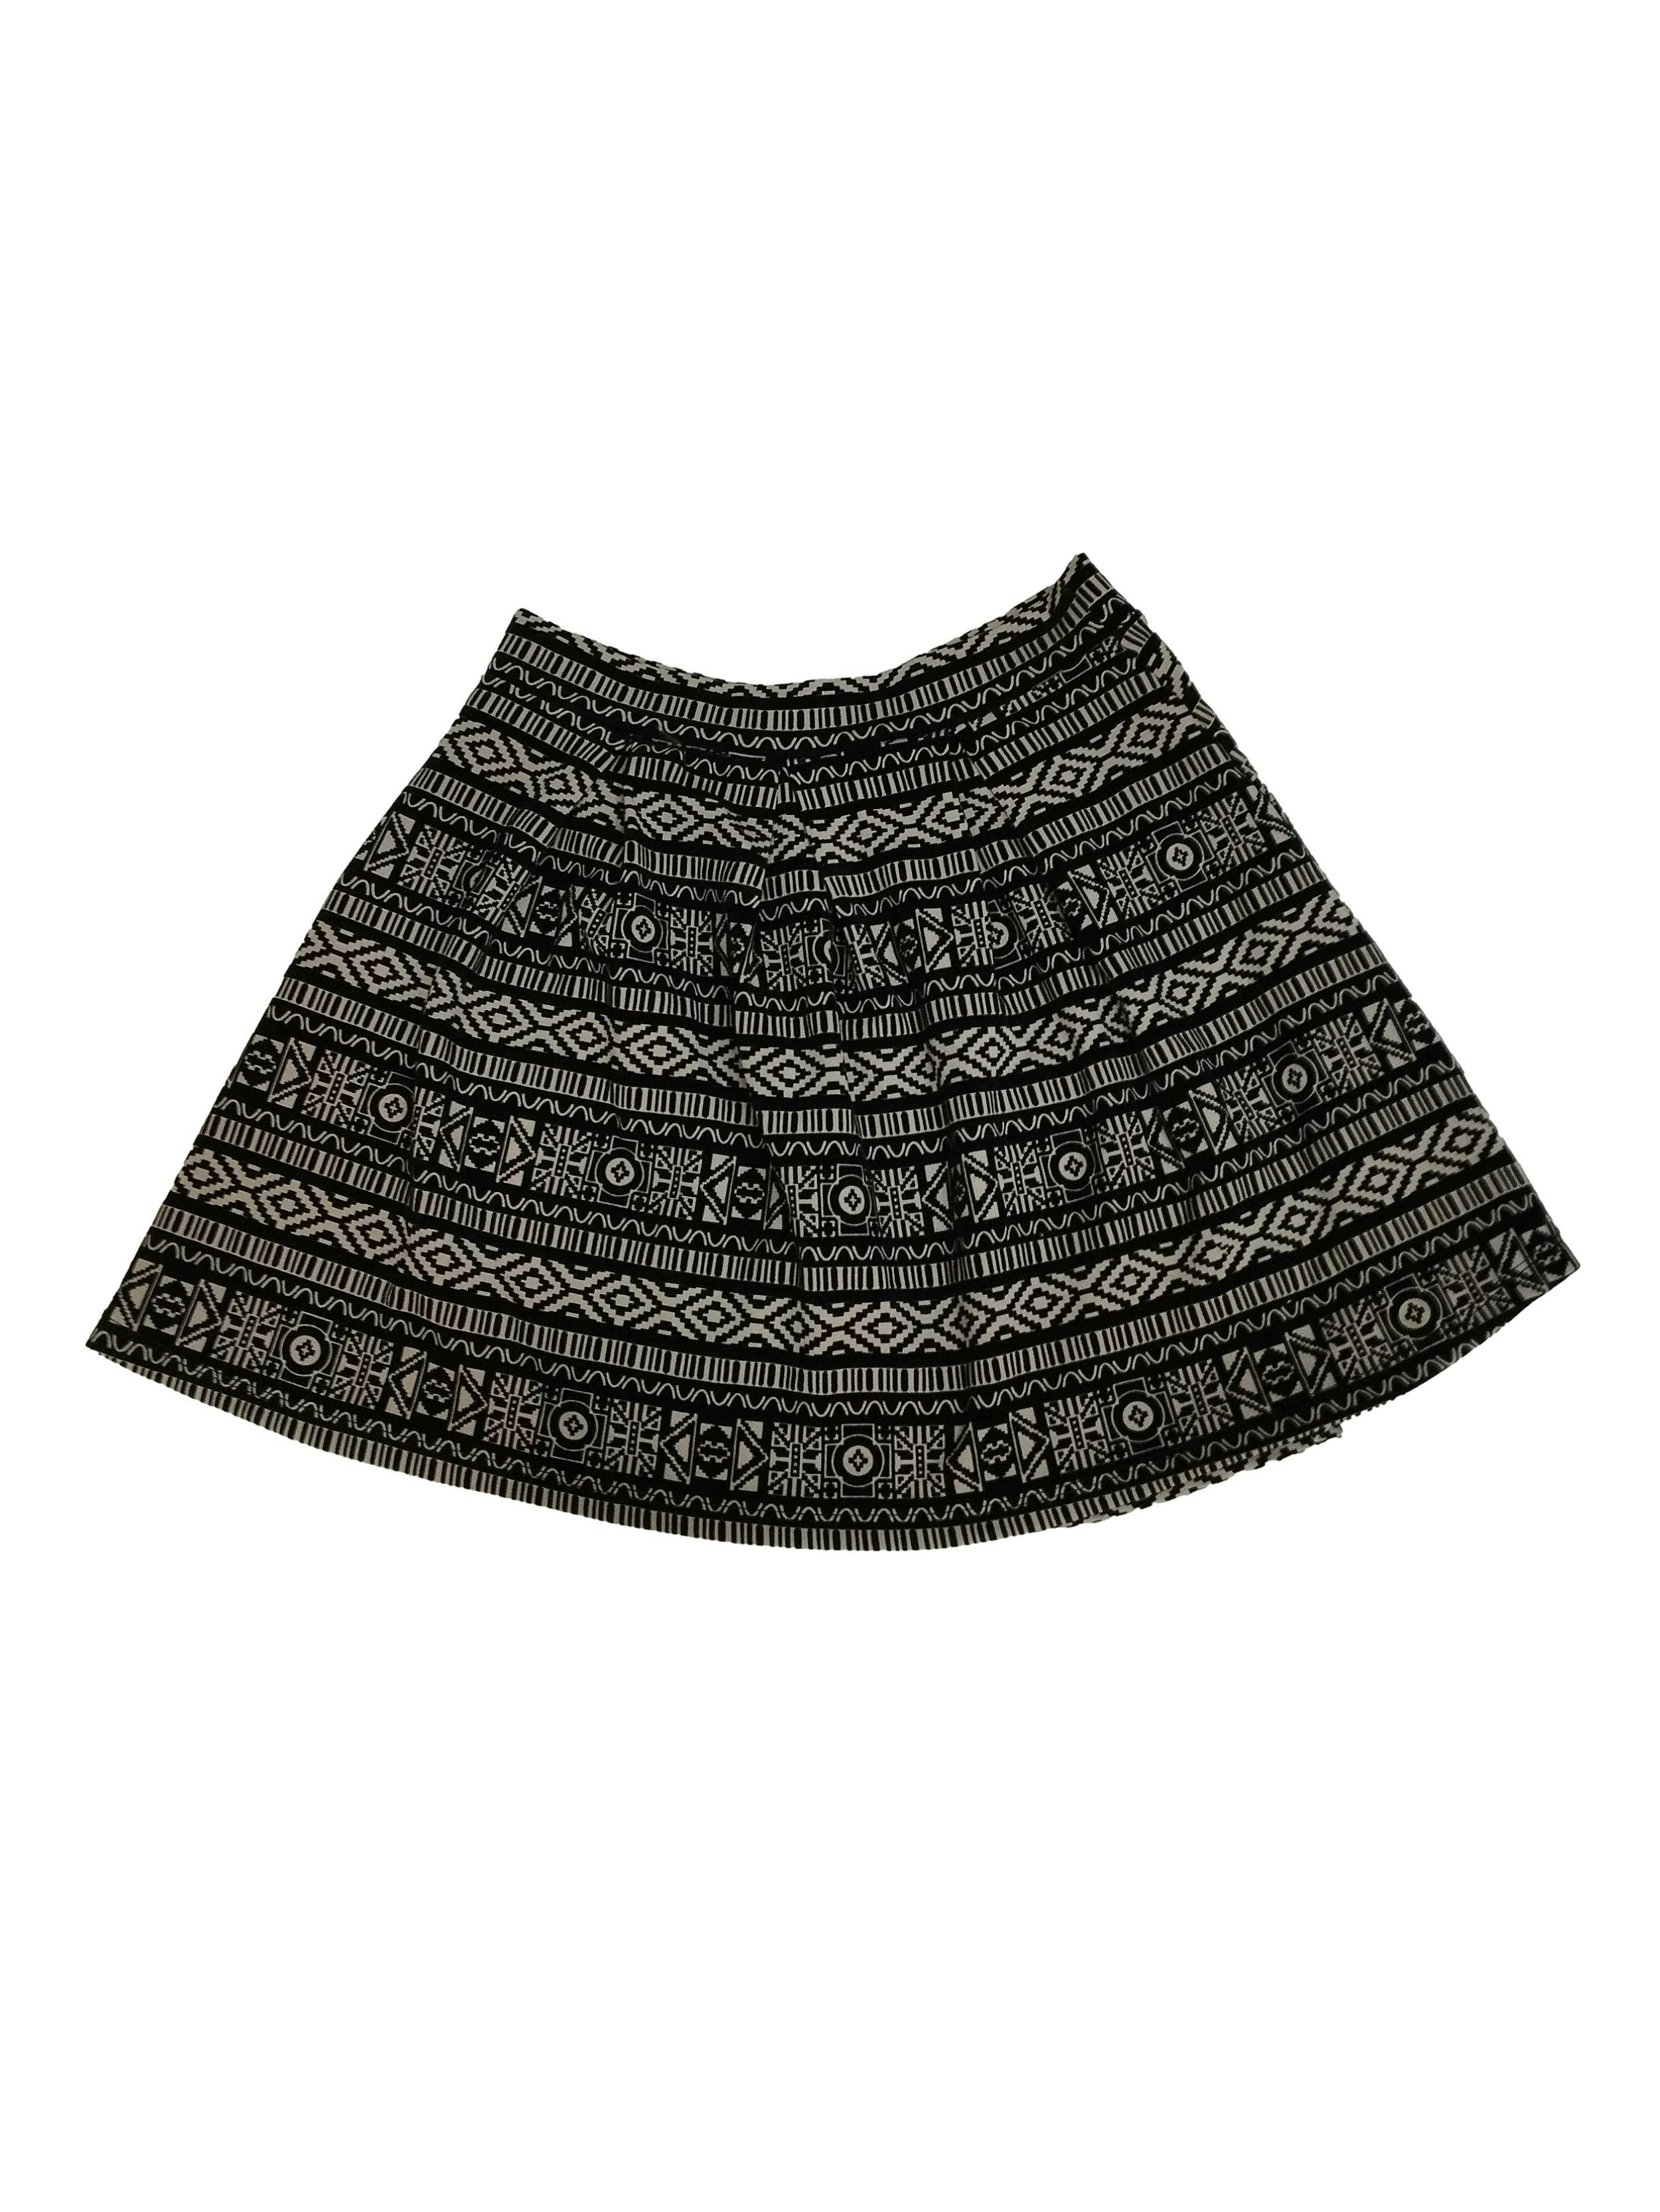 Falda Papaya beige con estampado tribal en negro, ligeramente stretch. Cintura: 70 cm, Largo: 40 cm. Nuevo con etiqueta